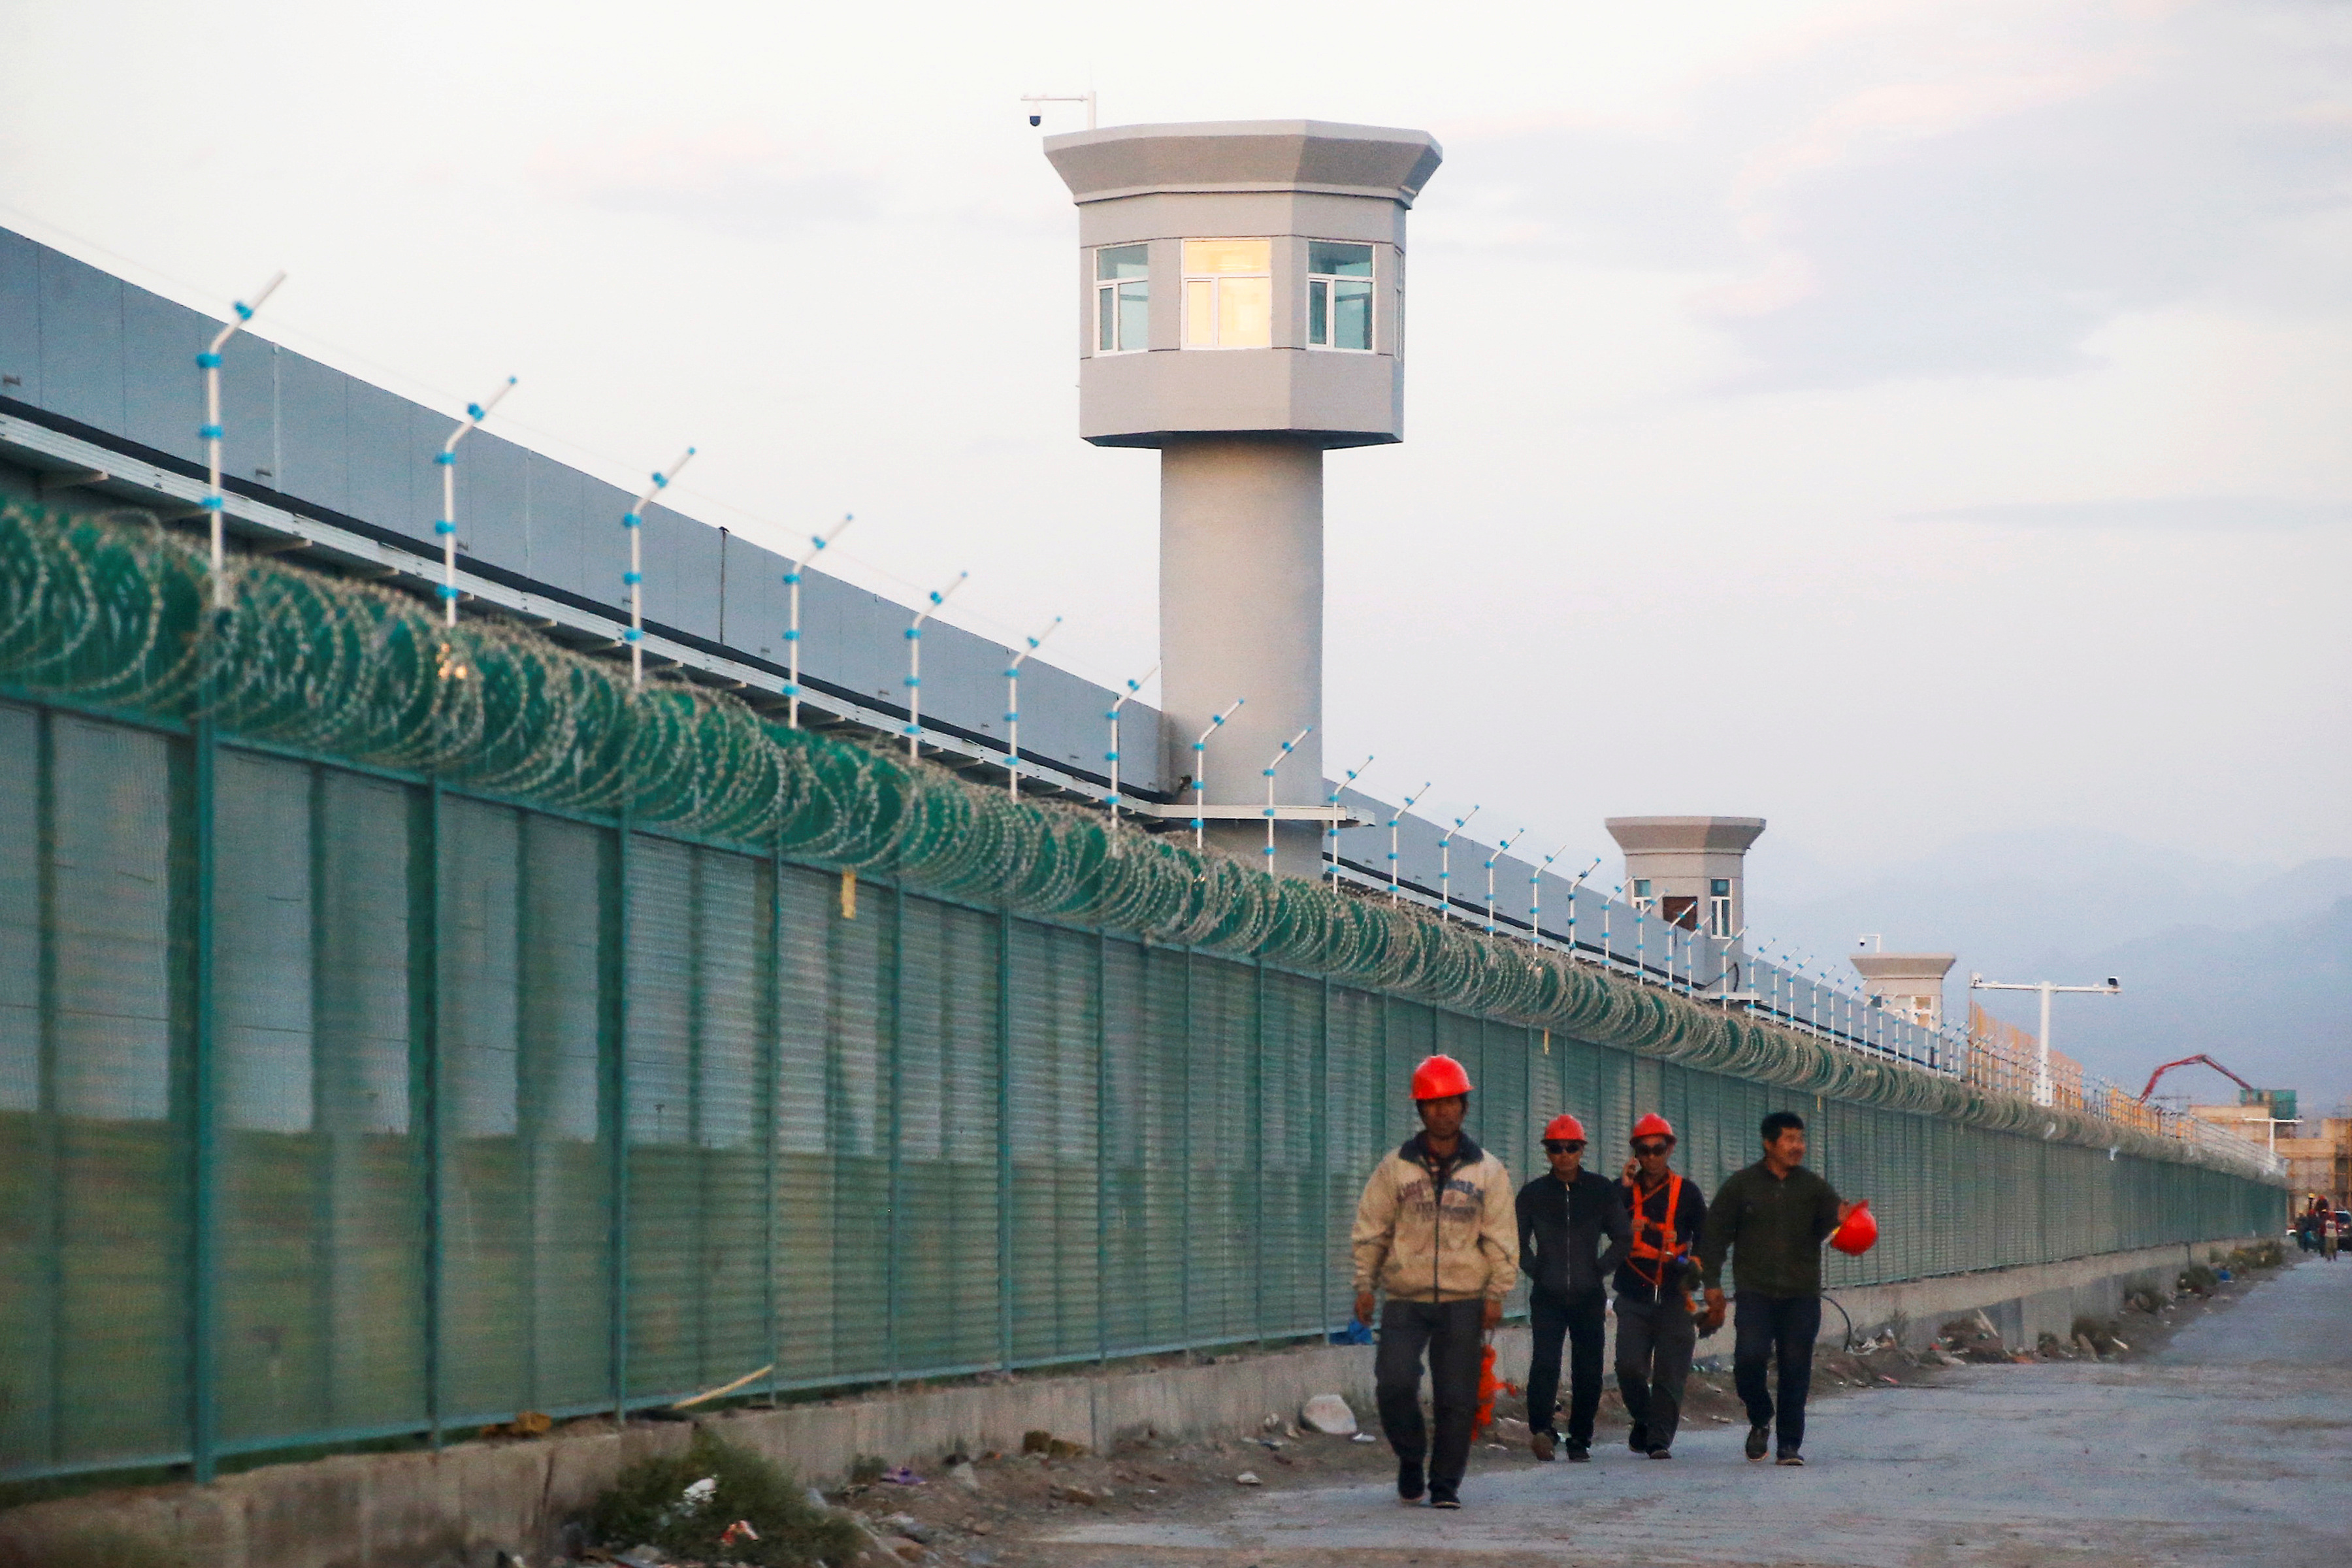 FOTO DE ARCHIVO: Trabajadores caminan por la cerca perimetral de lo que se conoce oficialmente como "centro de educación de habilidades vocacionales en Dabancheng", en la Región Autónoma Uigur de Xinjiang, China. Es el eufemismo que se emplea en los centros de detención de minorías religiosas y étnicas (Reuters)